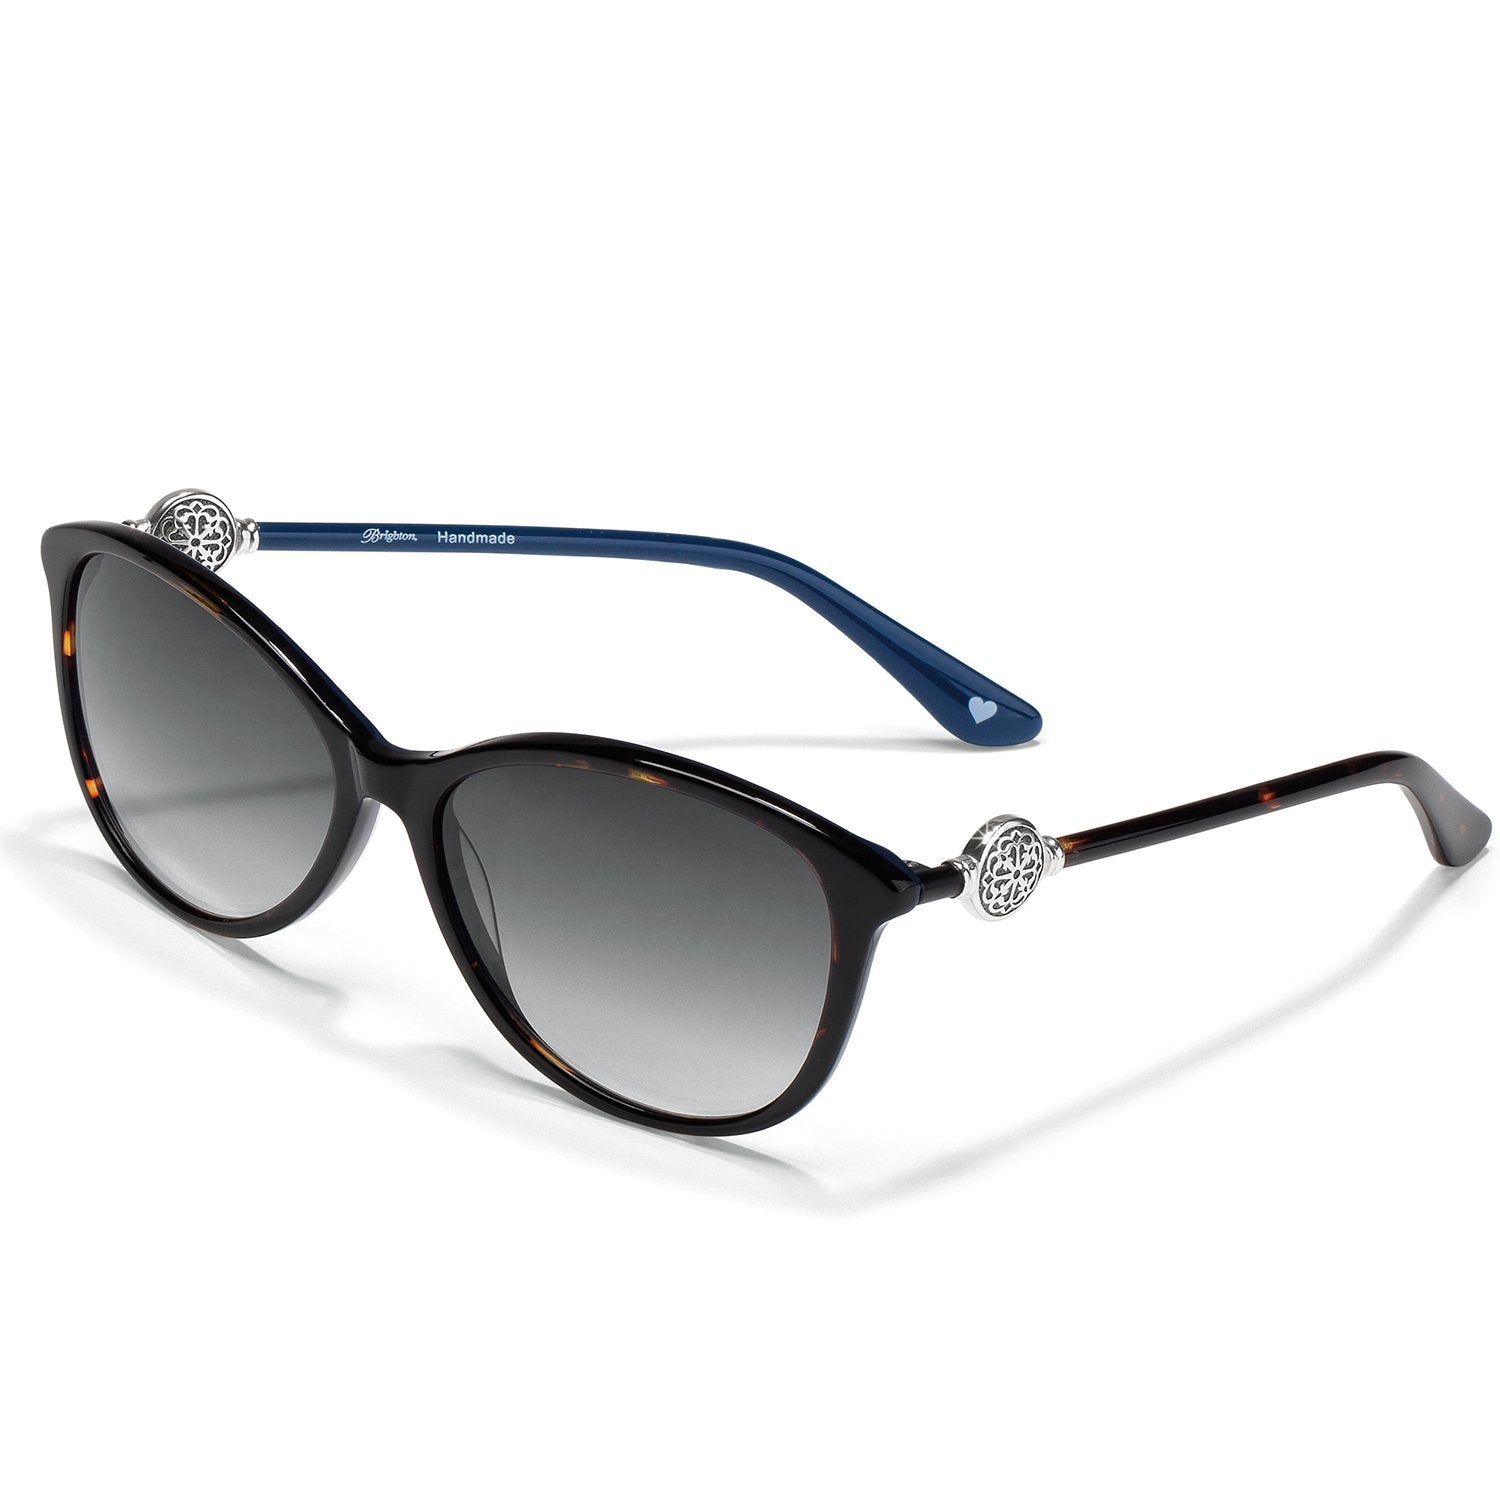 Ferrara Sunglasses Blue